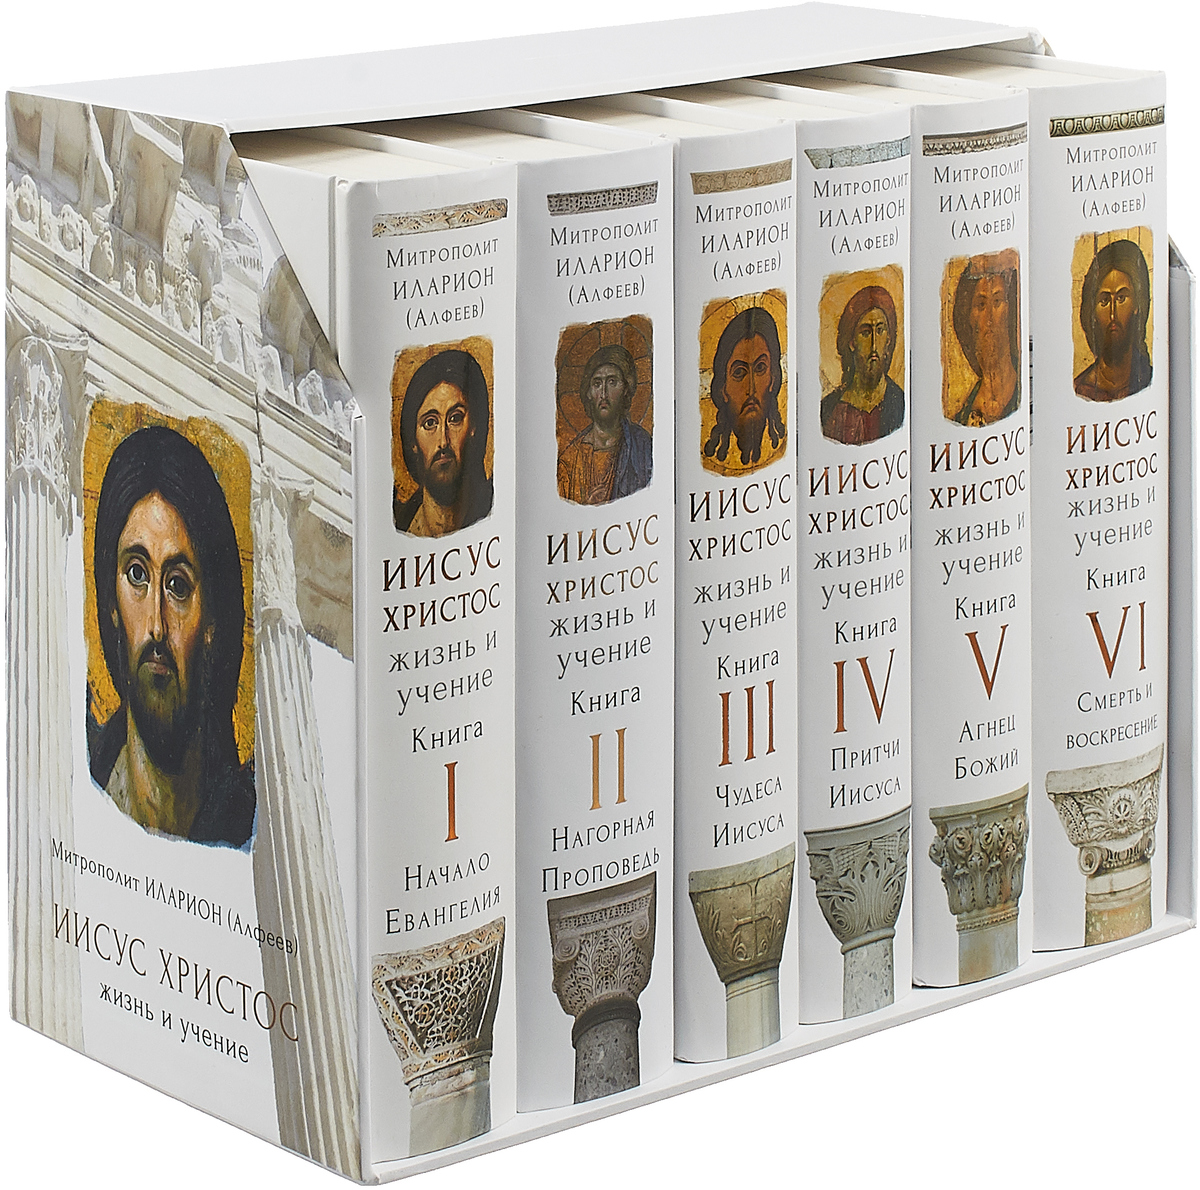 Иисус Христос. Жизнь и учение (подарочный комплект из 6 книг). Митрополит Иларион (Алфеев)